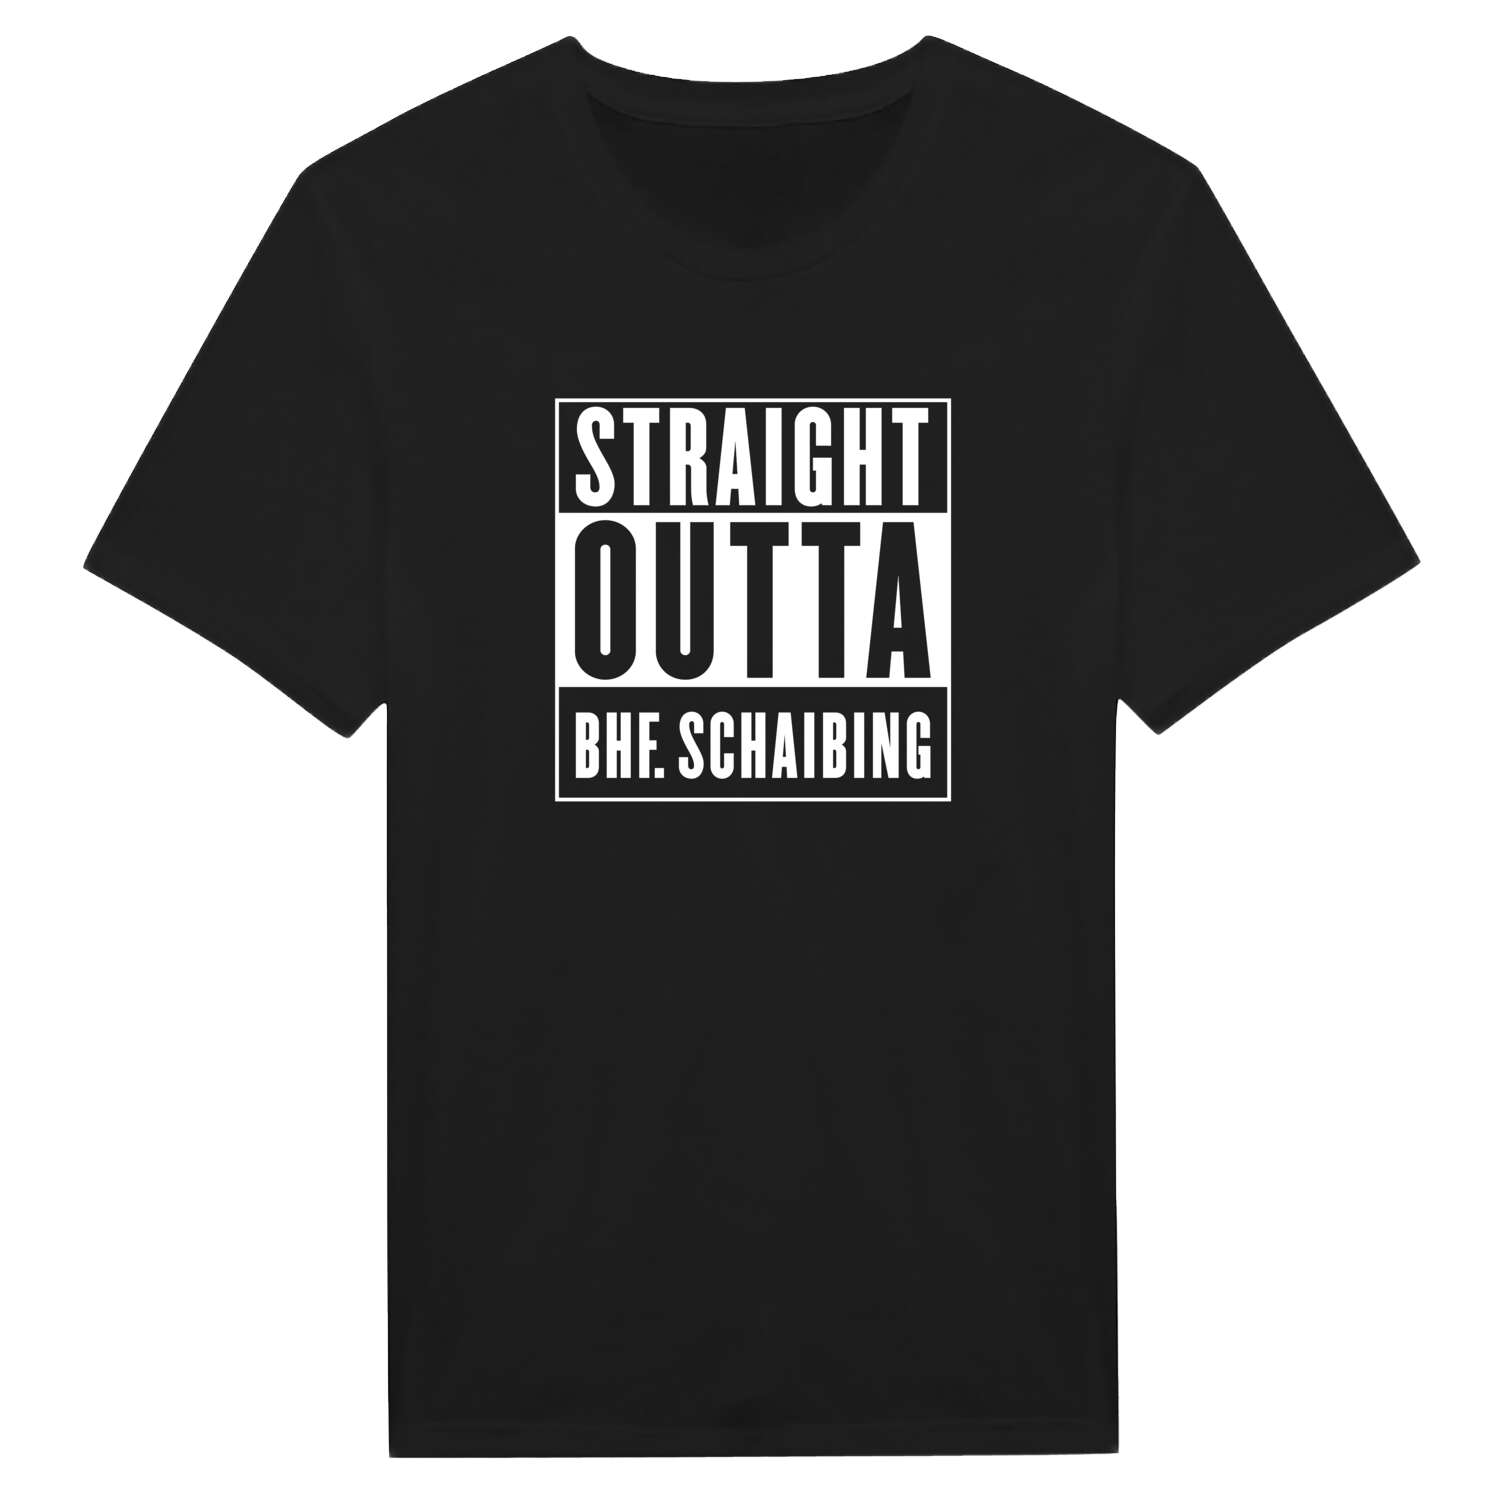 Bhf. Schaibing T-Shirt »Straight Outta«